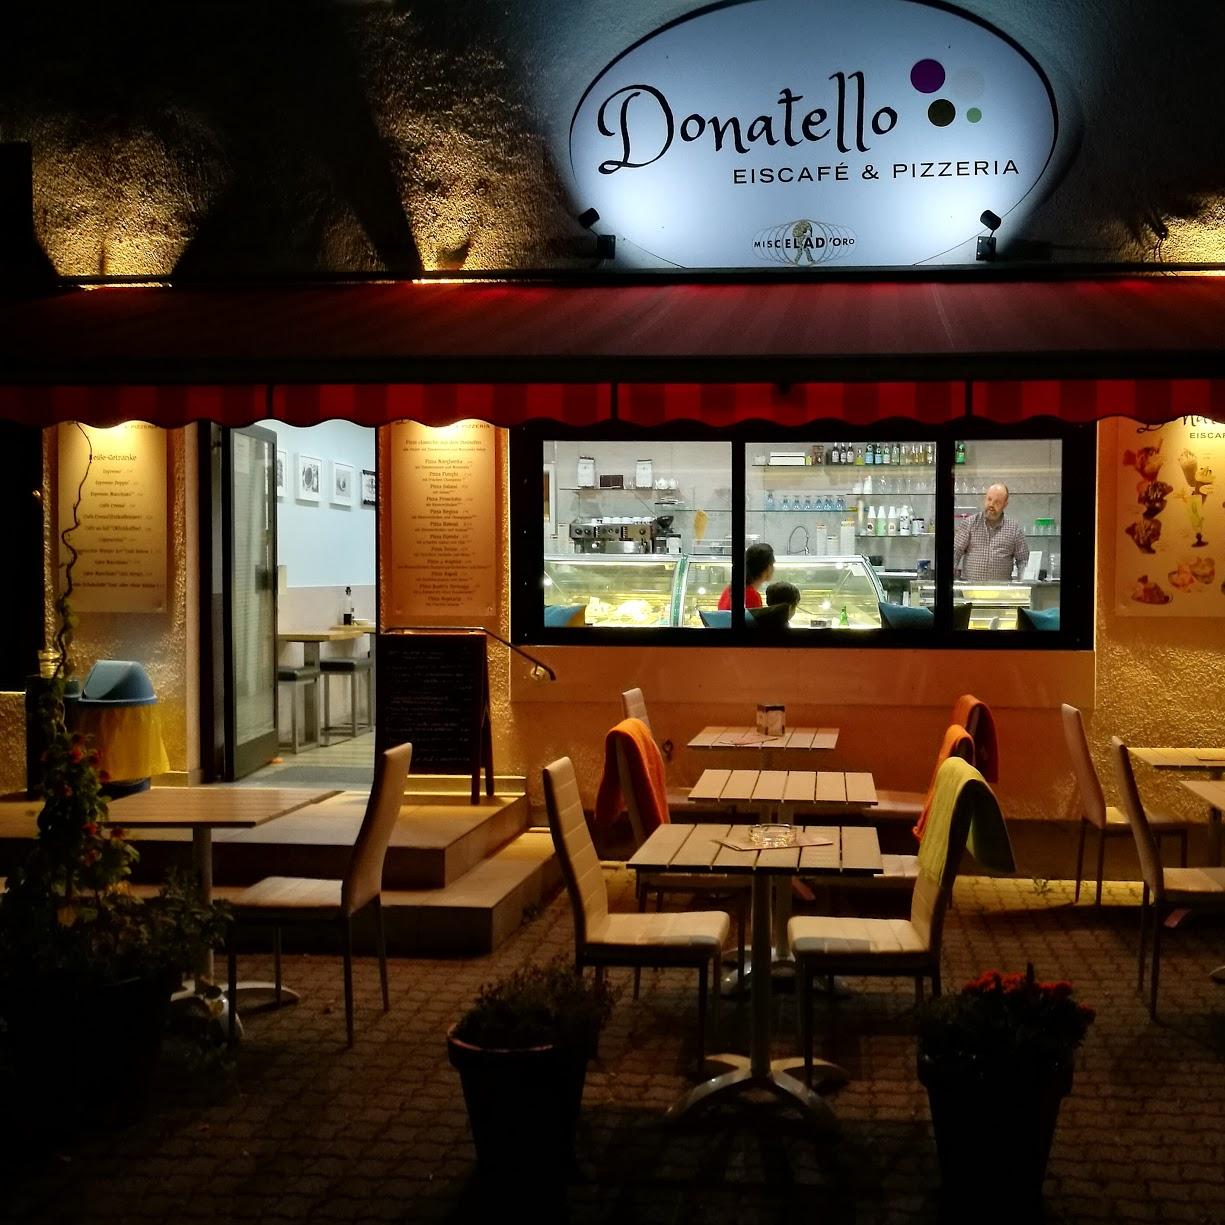 Restaurant "Donatello Eiscafé & Pizzeria" in Unterhaching